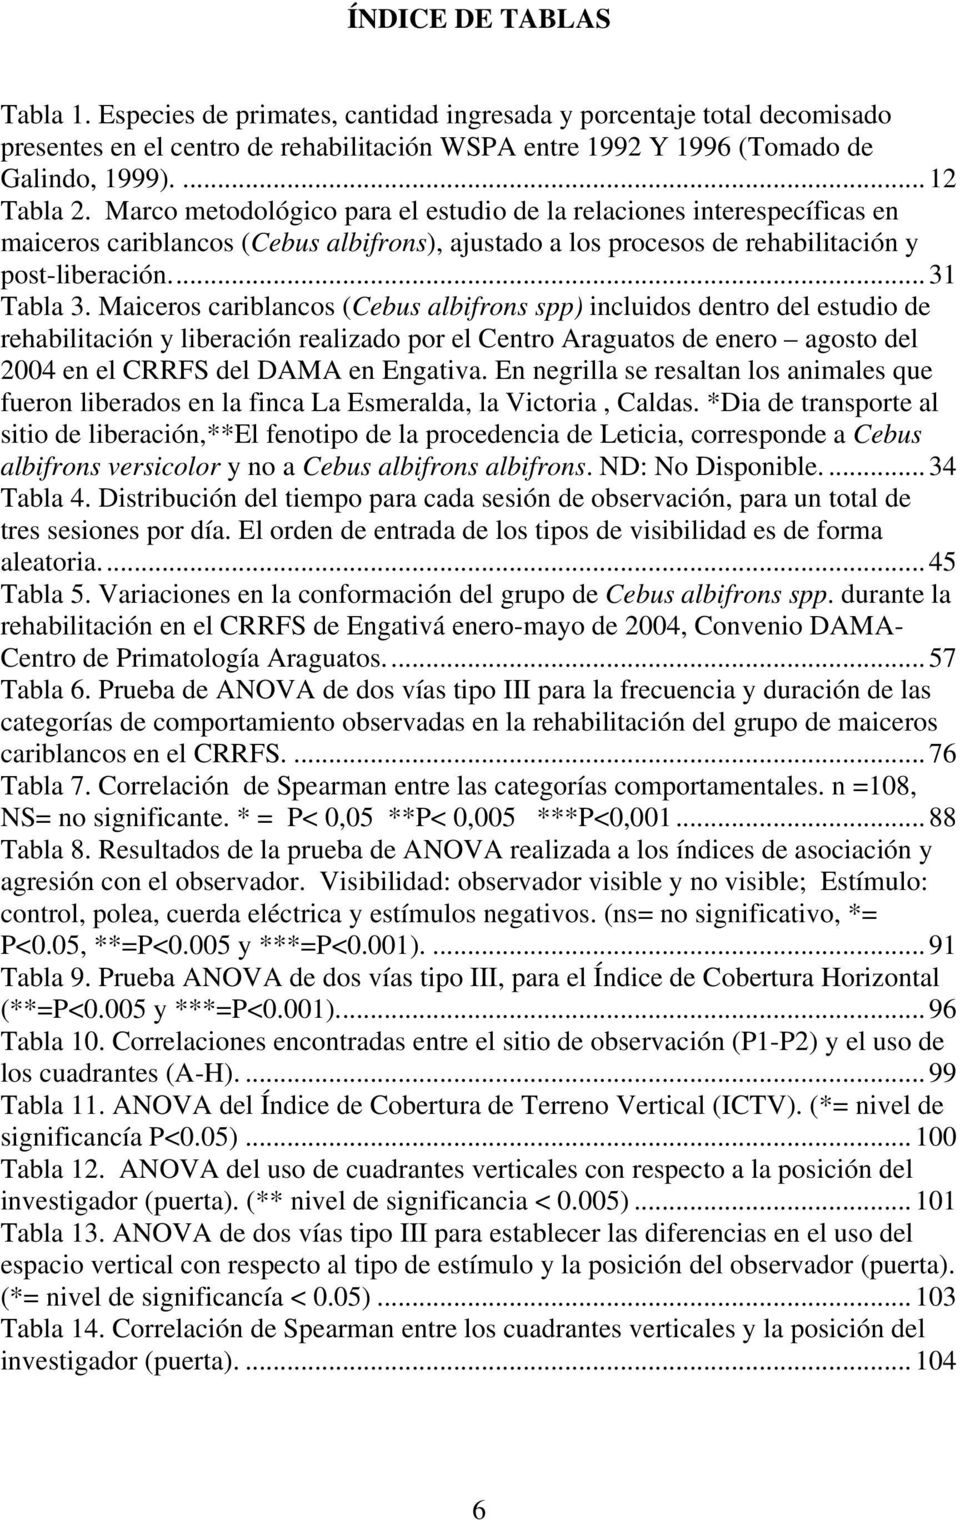 Maiceros cariblancos (Cebus albifrons spp) incluidos dentro del estudio de rehabilitación y liberación realizado por el Centro Araguatos de enero agosto del 2004 en el CRRFS del DAMA en Engativa.